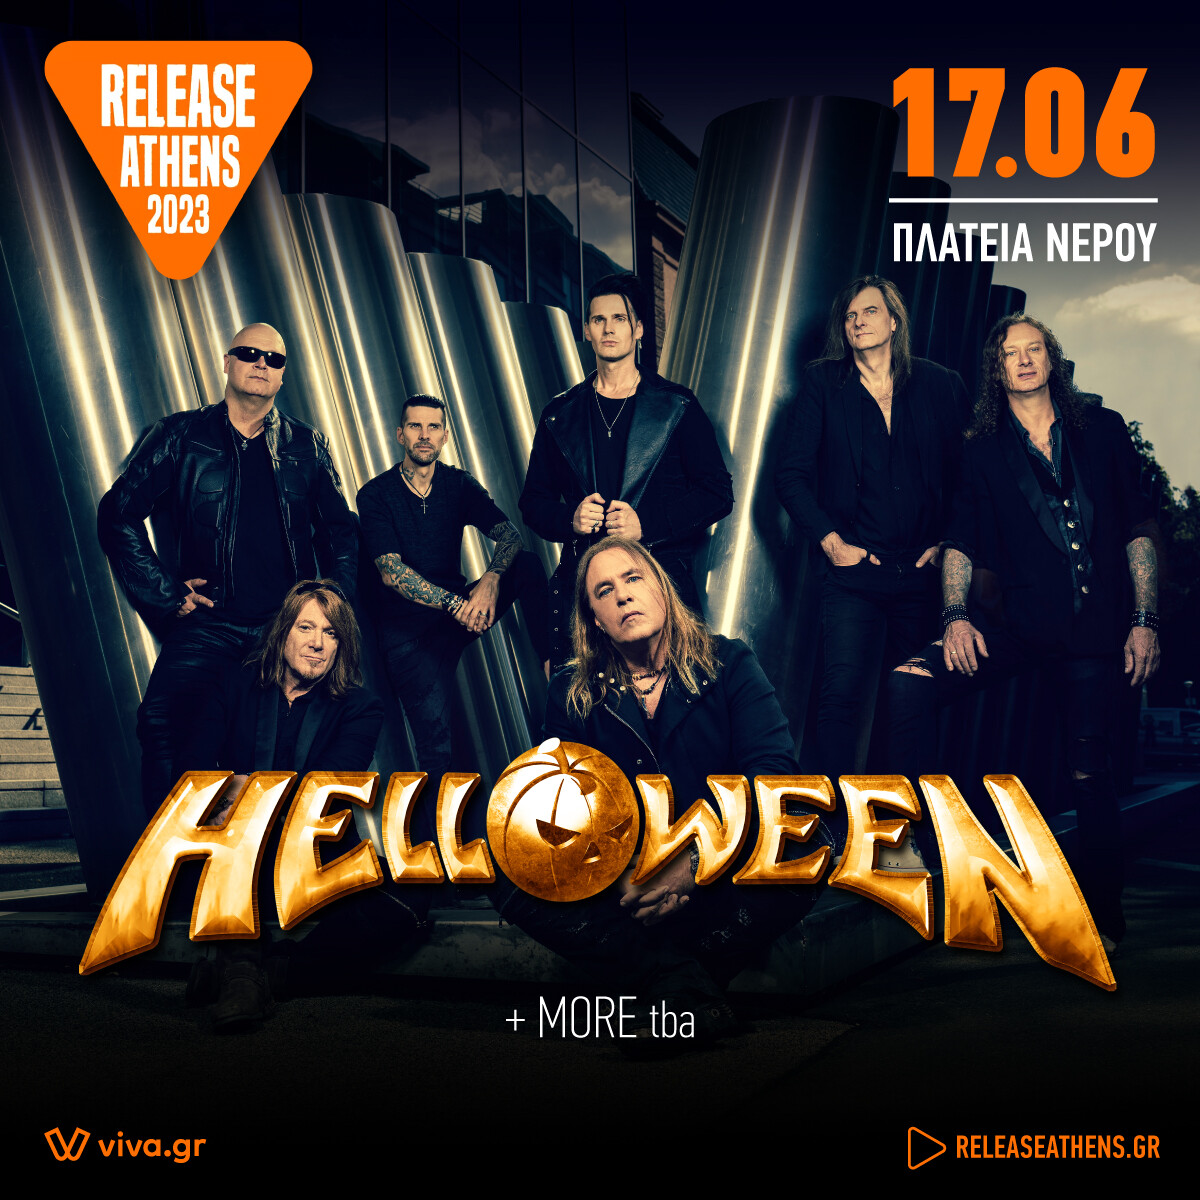 helloween-release-promo